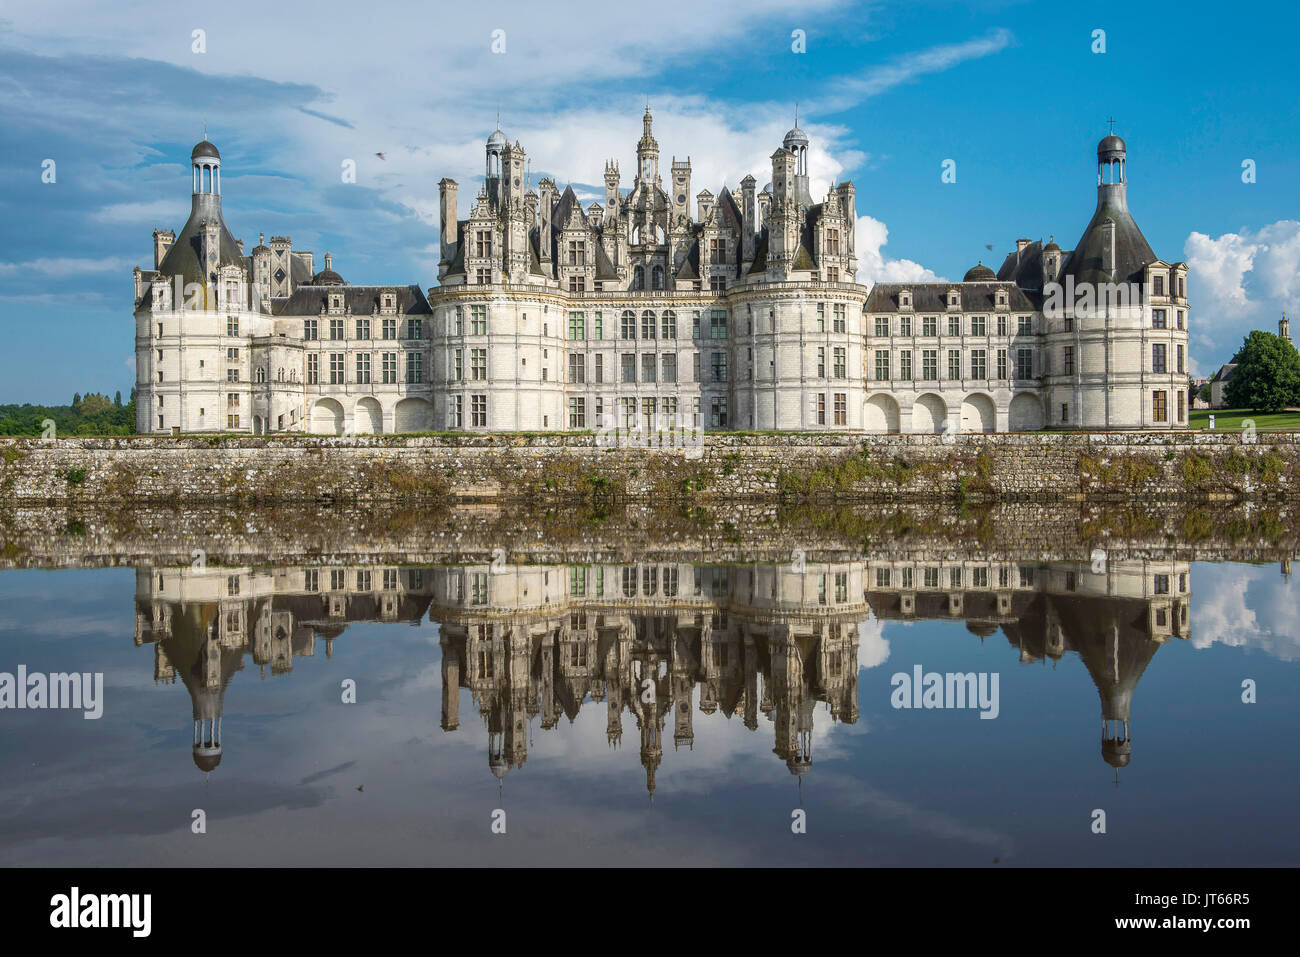 Le "château de Chambord" château, Patrimoine Mondial de l'UNESCO. Le Château de Chambord fait partie des châteaux de la Loire ('Chateaux de la Loire Banque D'Images